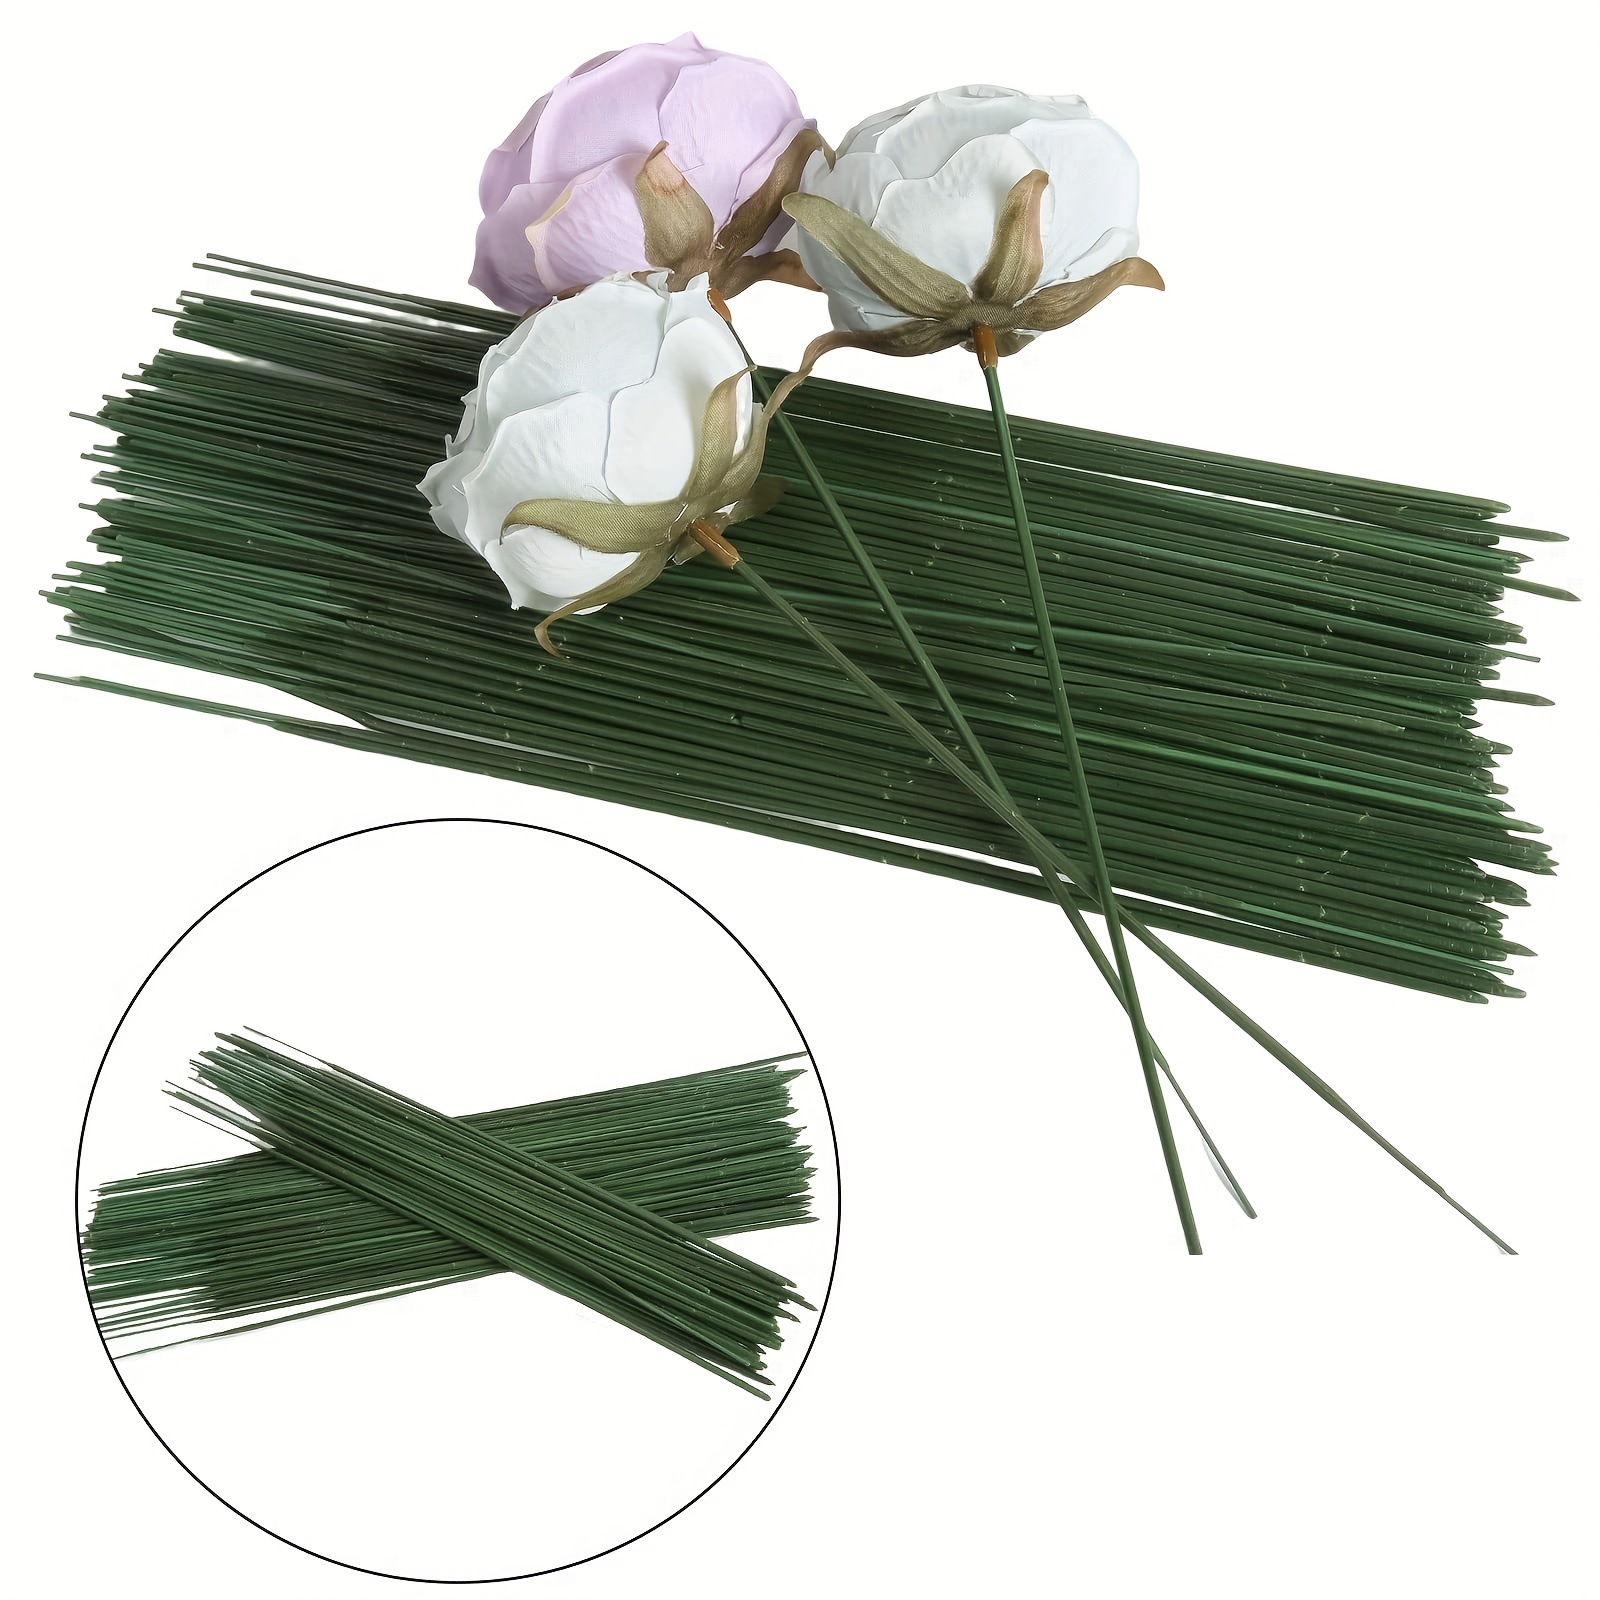 Corde de jute - Matériel fleuriste - Outils - Art floral et décoration